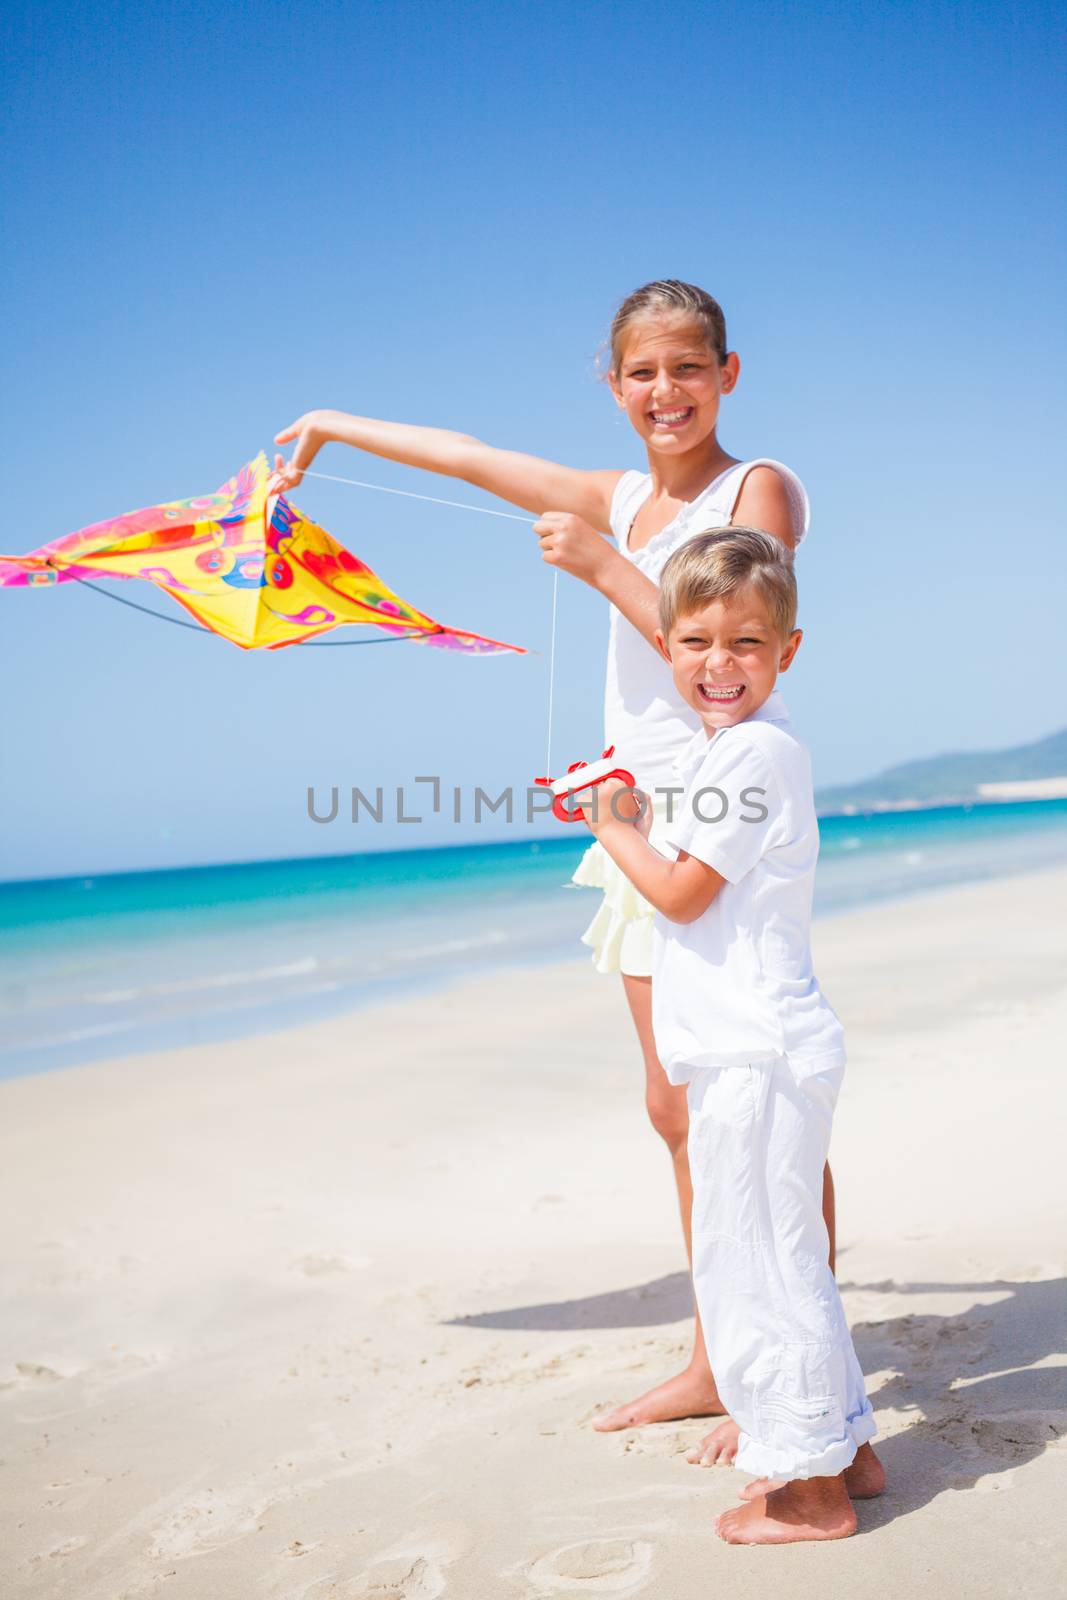 Kids with kite. by maxoliki